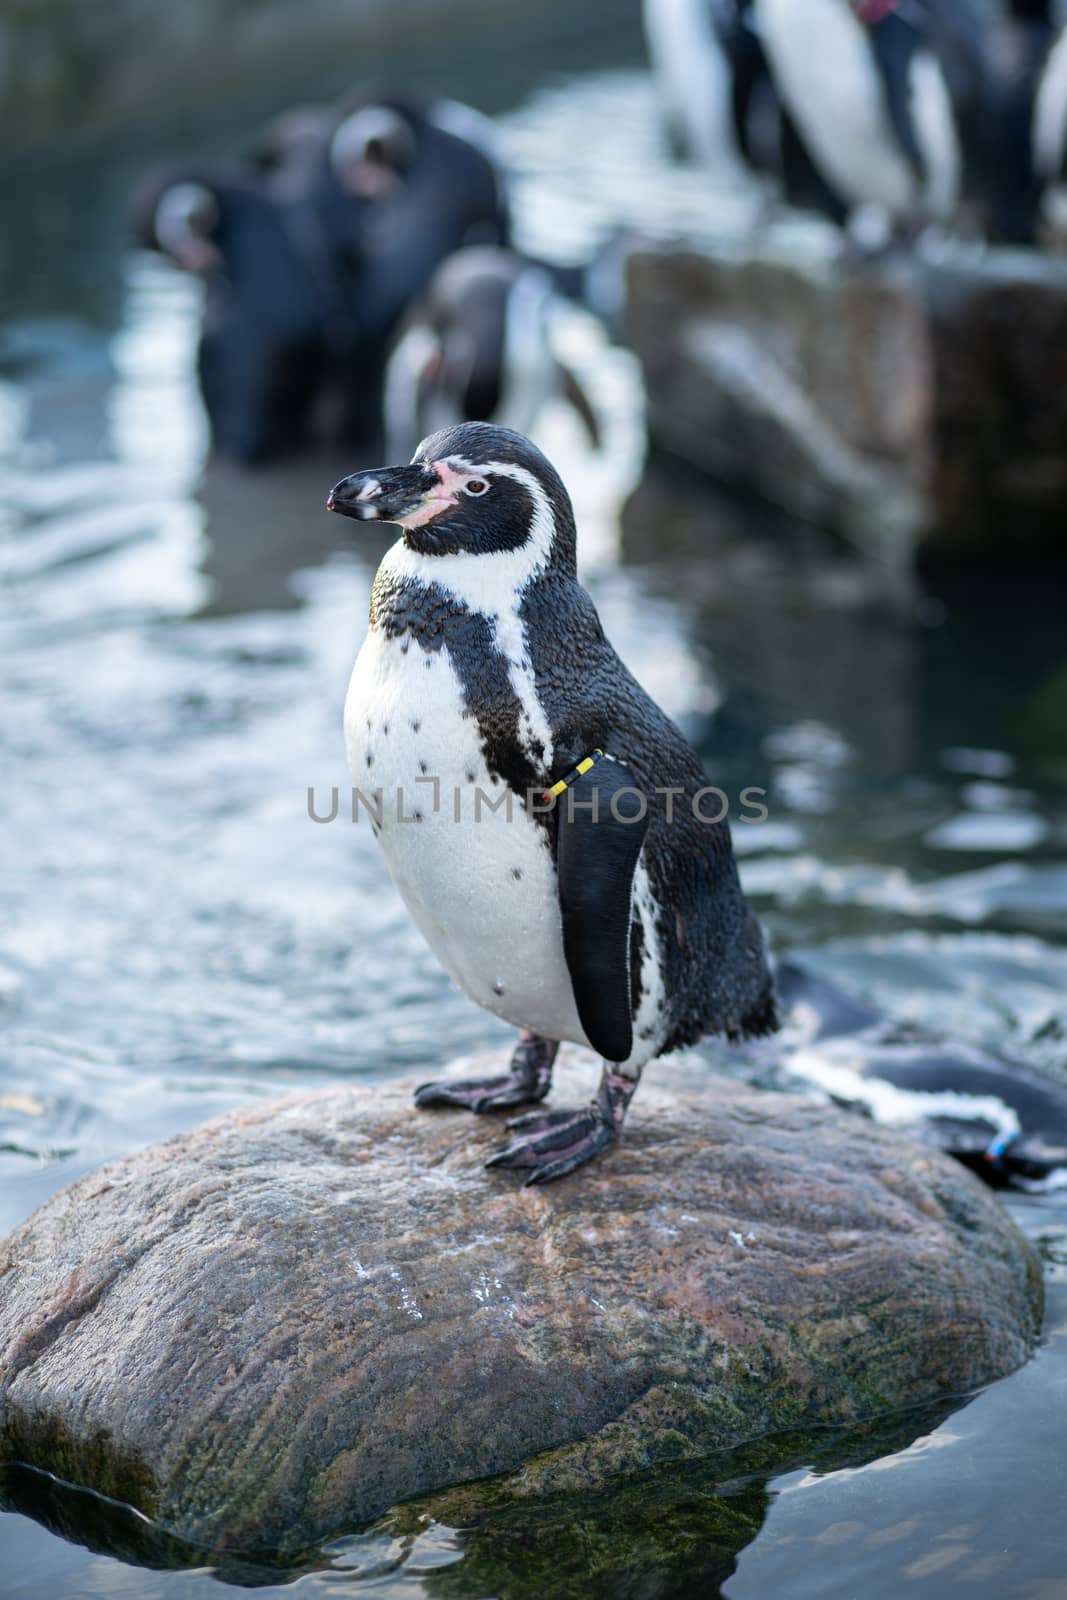 Frederiksberg, Denmark - August 25, 2019: A penguin sitting on a rock in Copenhagen Zoo.